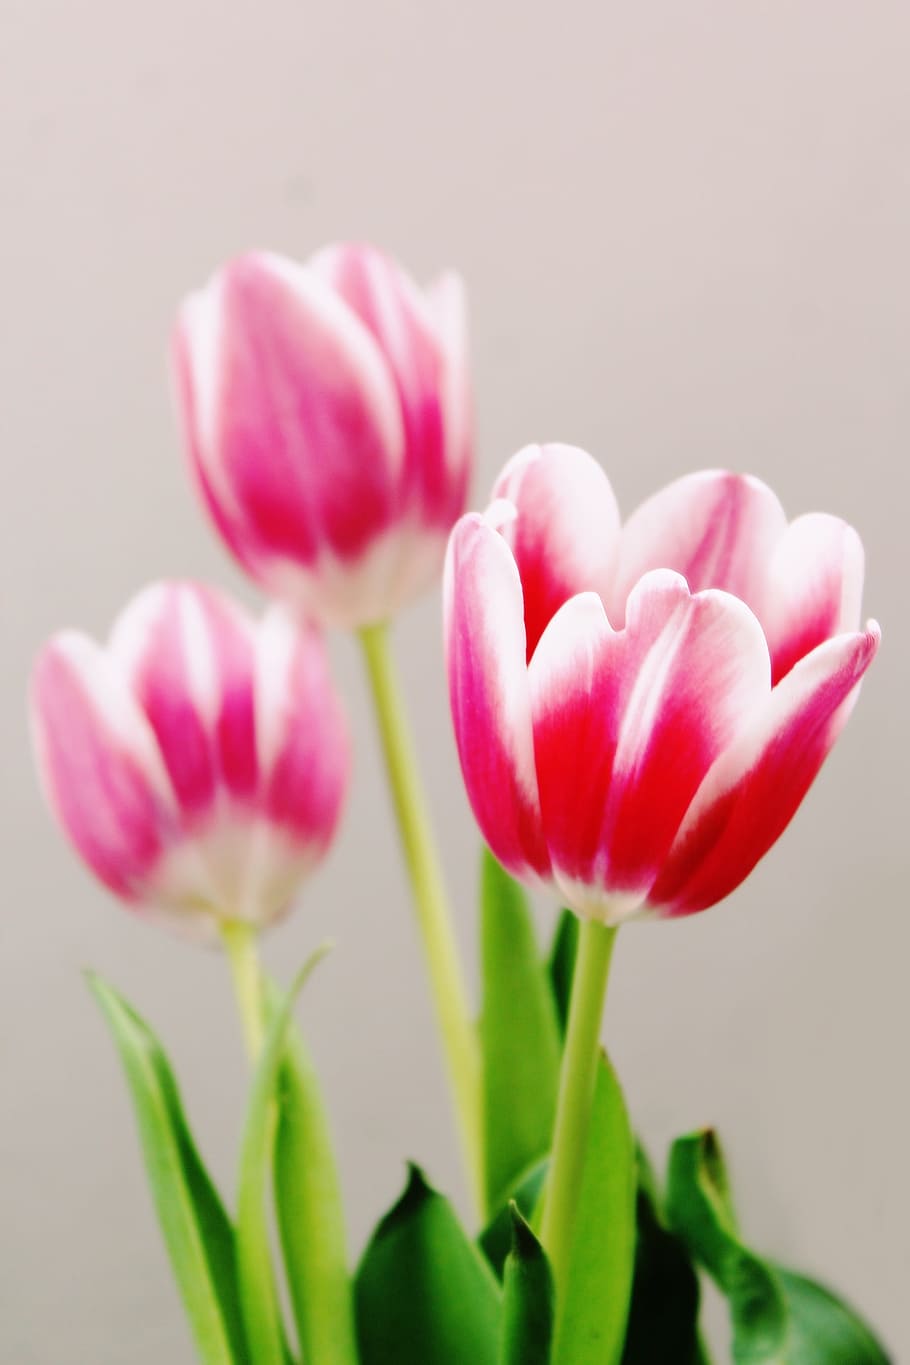 tres, flores de tulipán rosa y blanco, rosa, tulipán blanco, flores, tulipanes, flora, rojo, floración, schnittblume